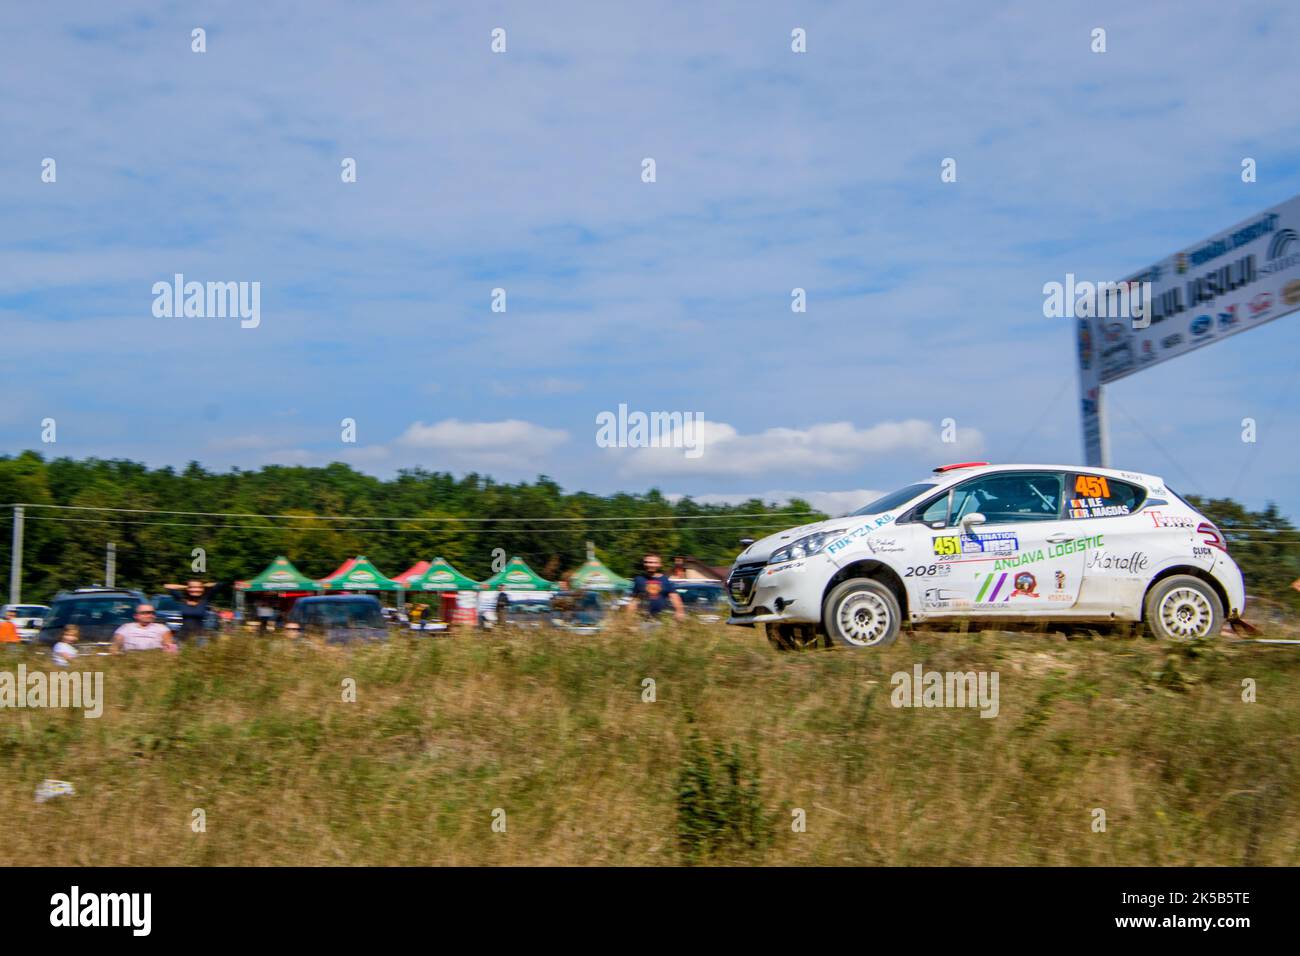 Une course de voiture à l'événement annuel de ralliement à Iasi sur la route verte de la forêt de Dobrovat Banque D'Images